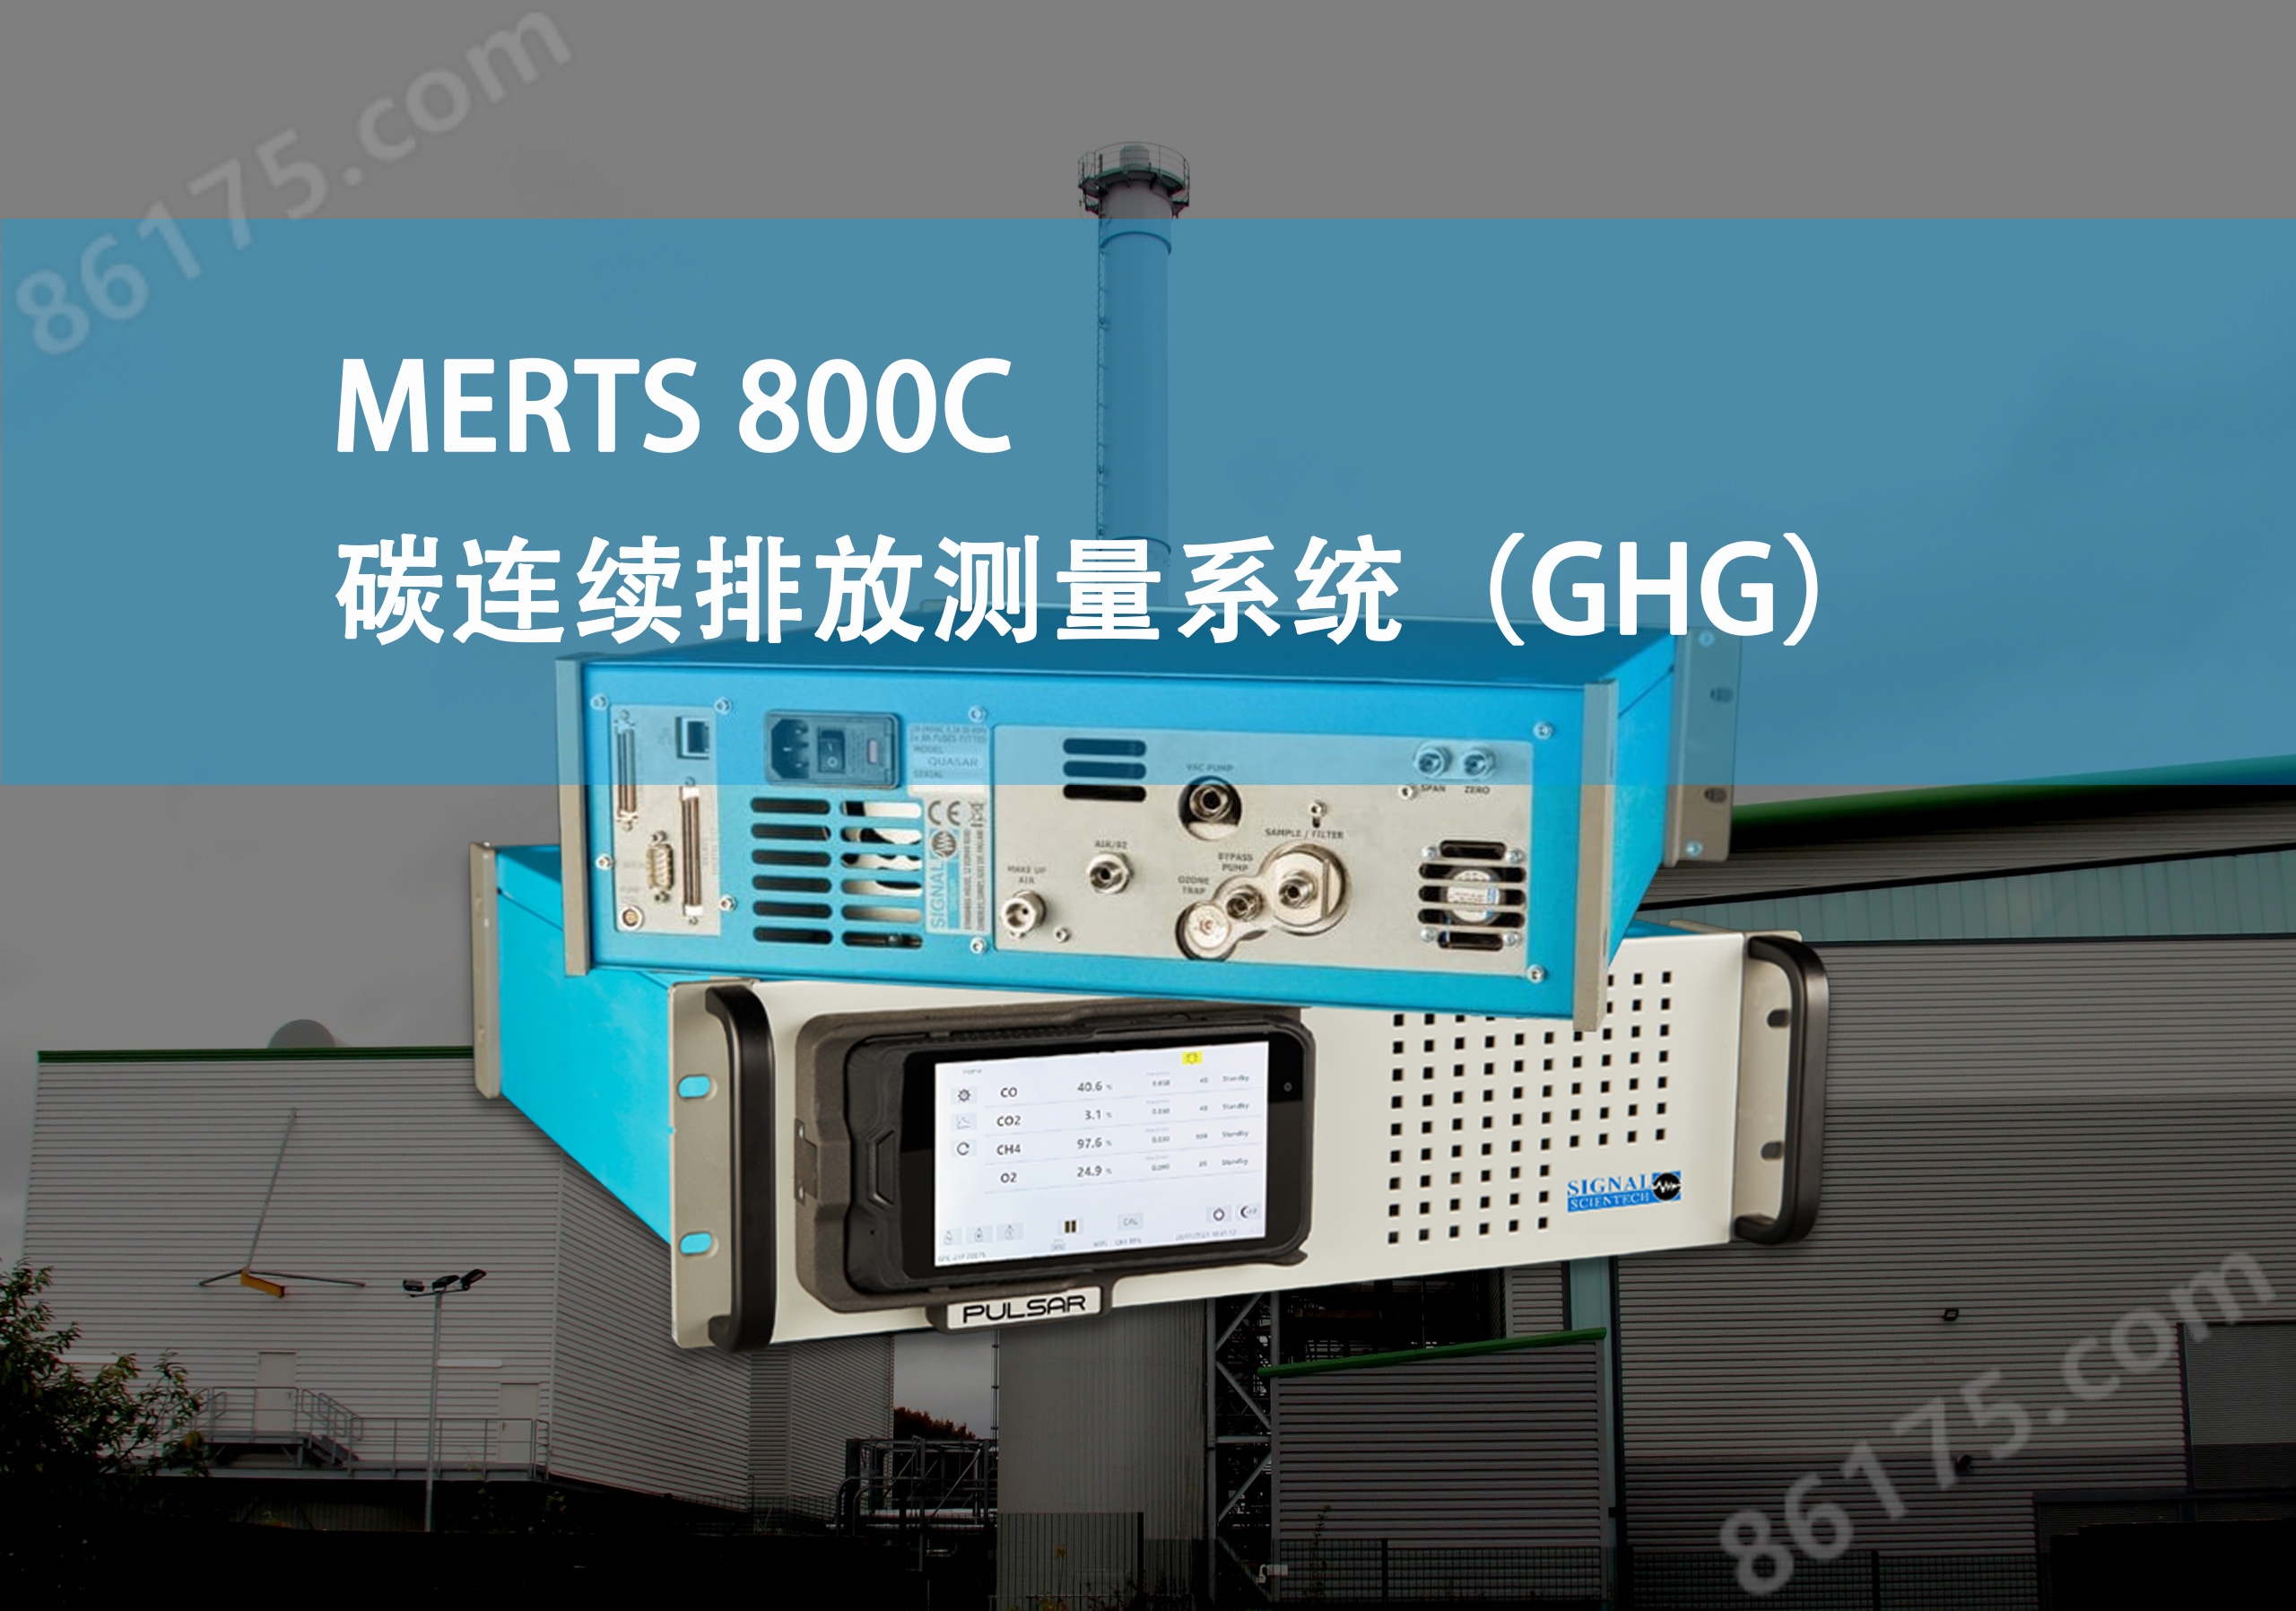 新一代MERTS 800C<strong><strong>碳排放在线监测系统</strong></strong>的技术特点